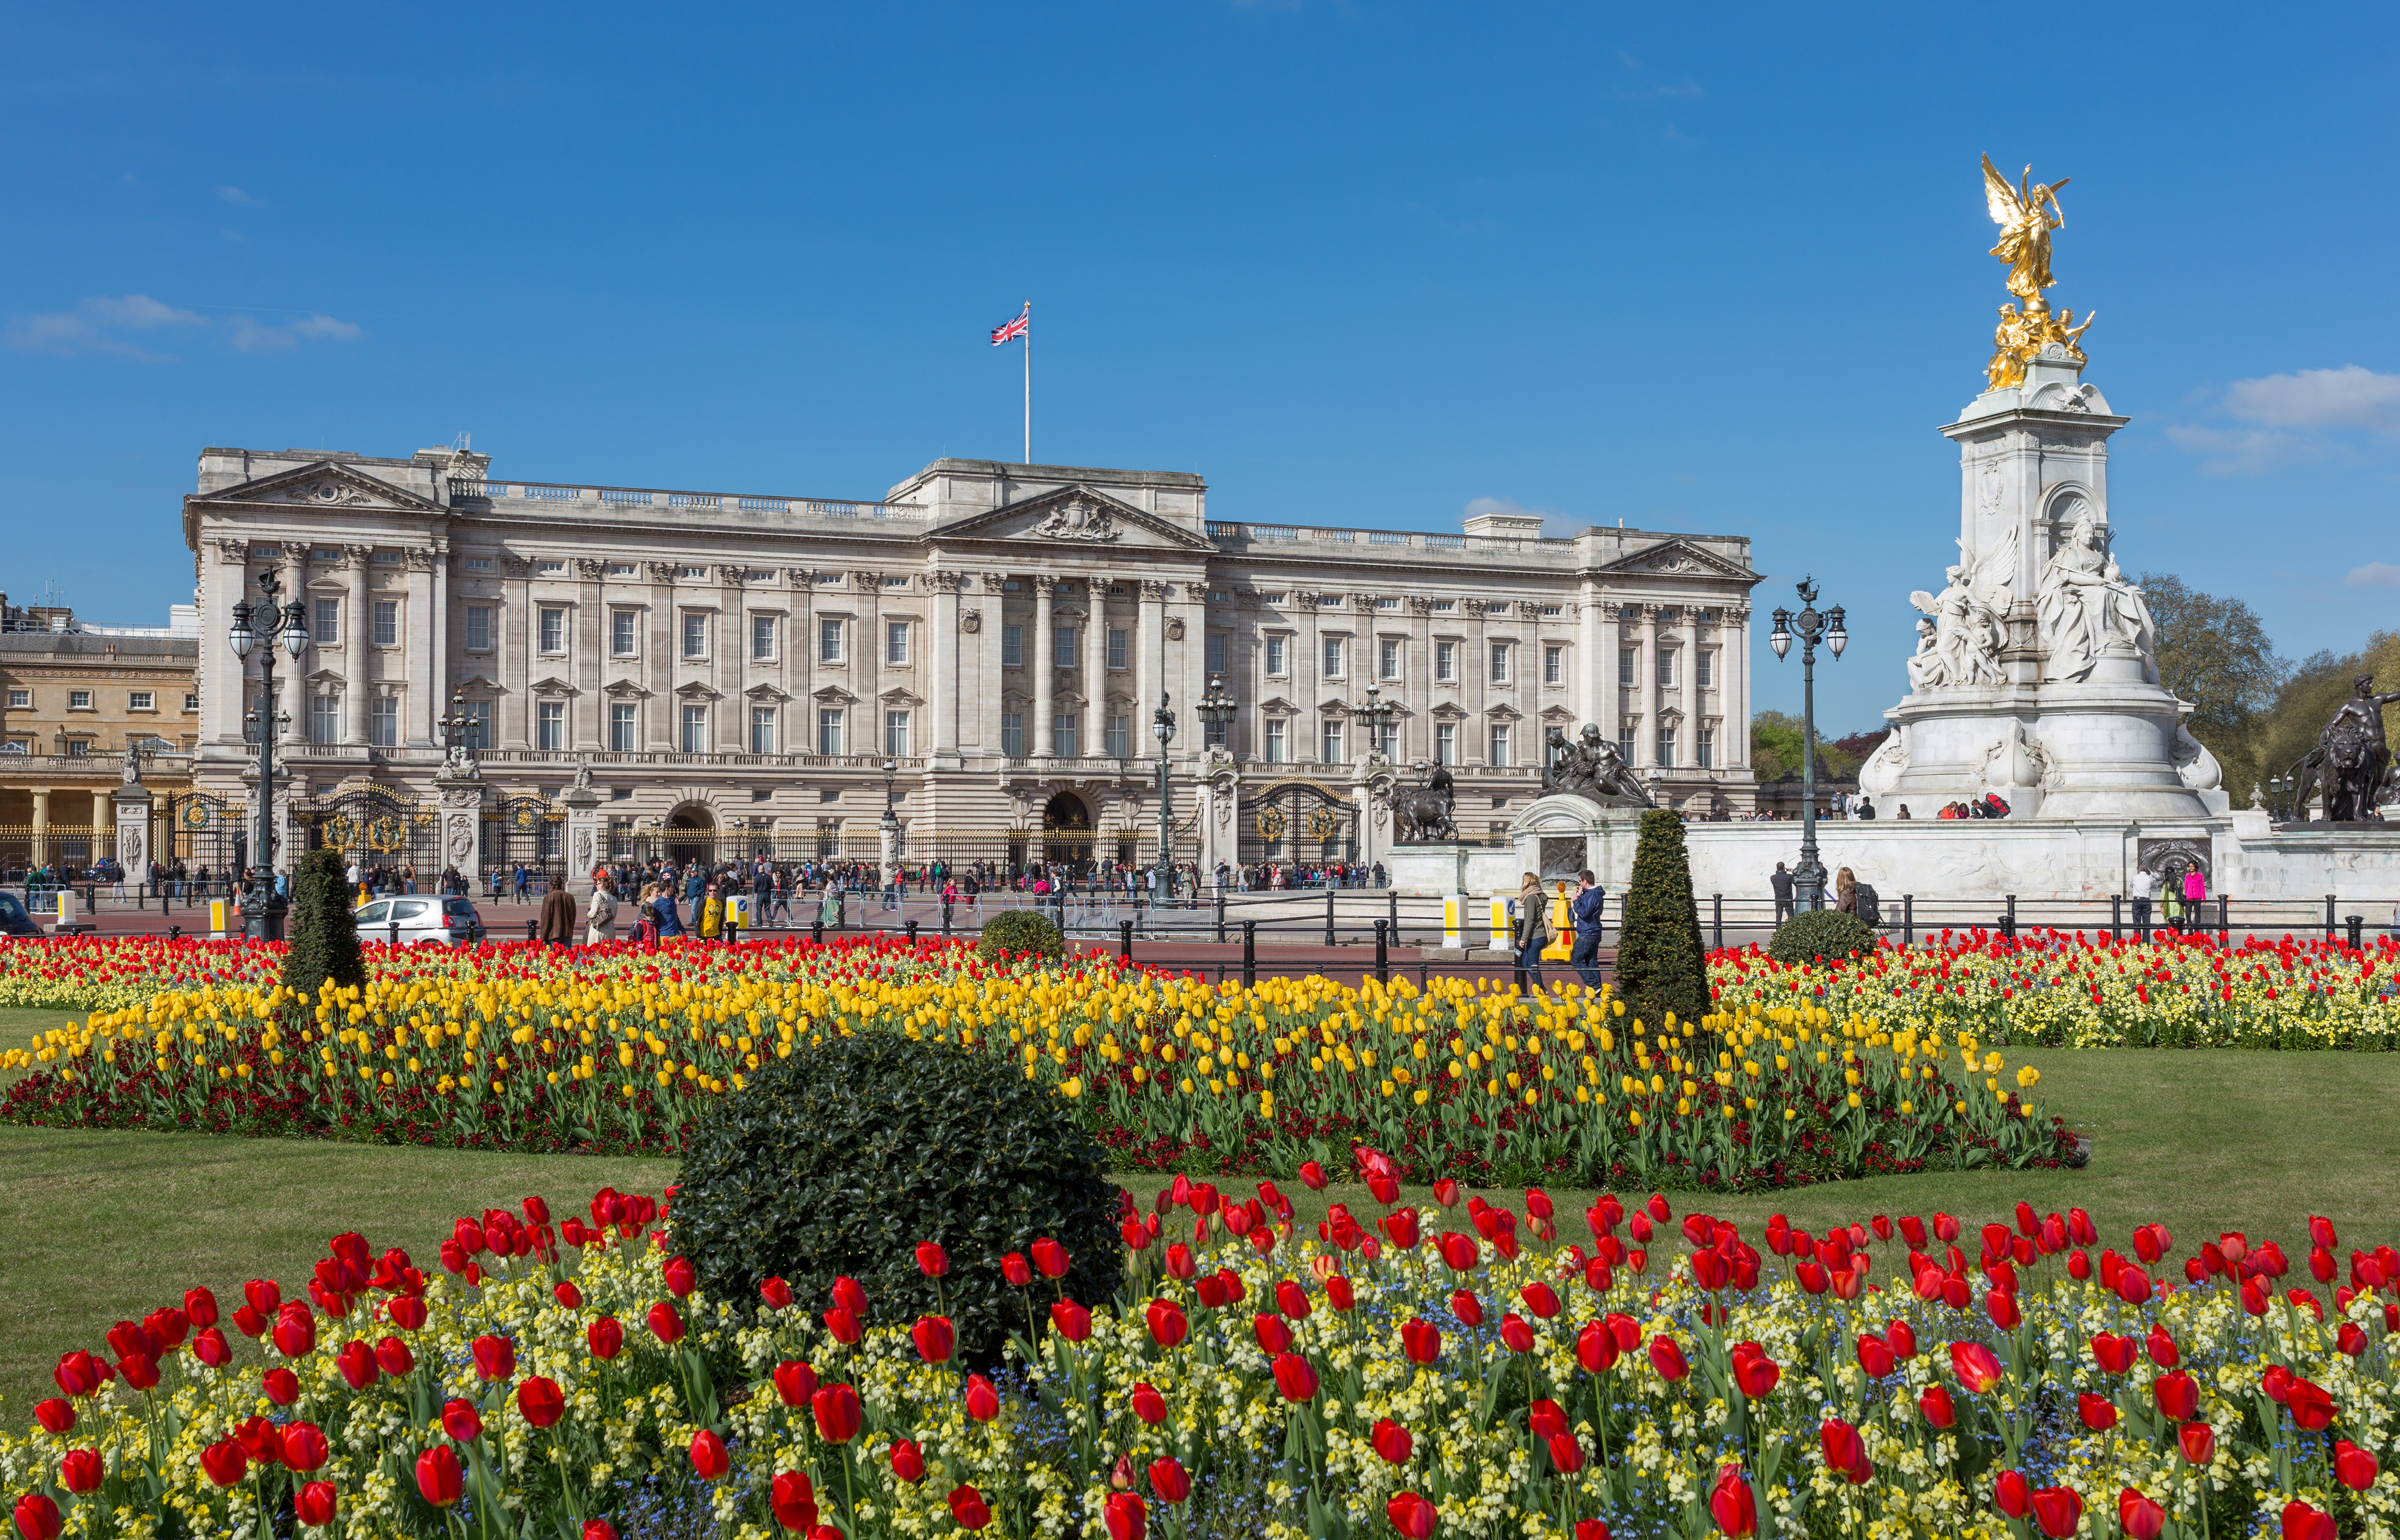 Images of Buckingham Palace | 5064x3250